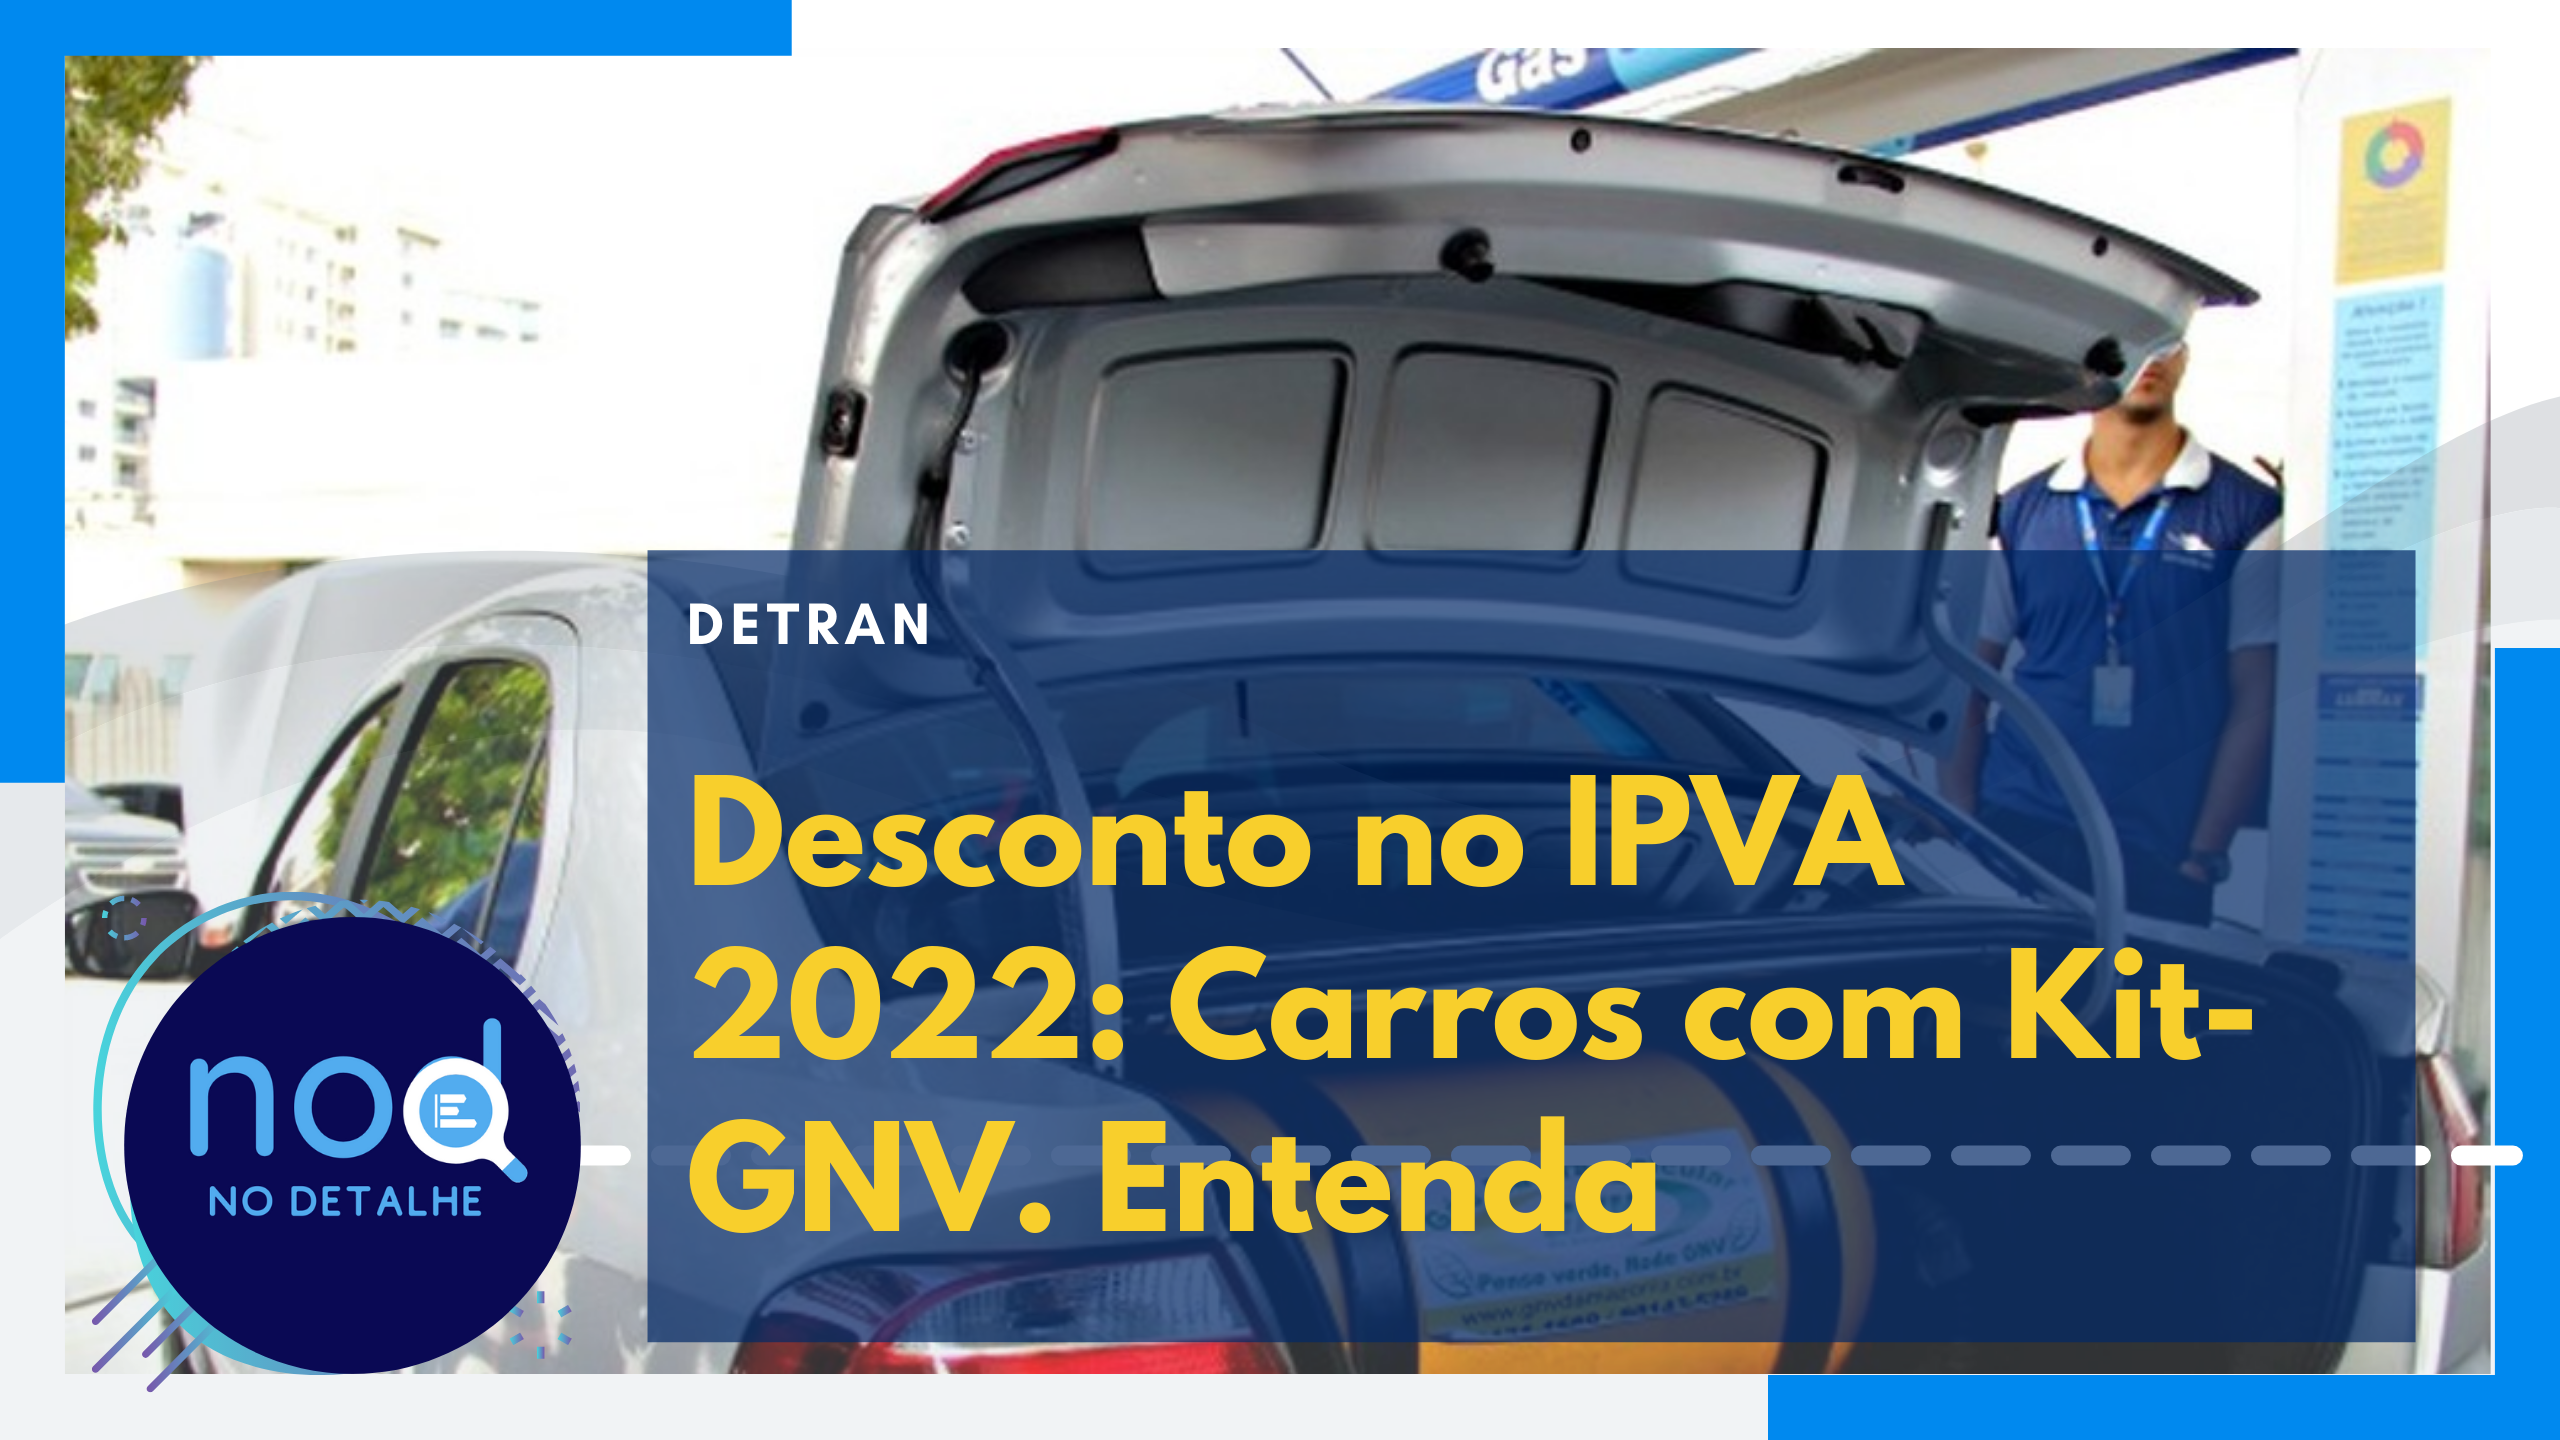 Desconto no IPVA 2022 Carros com Kit-GNV. Entenda